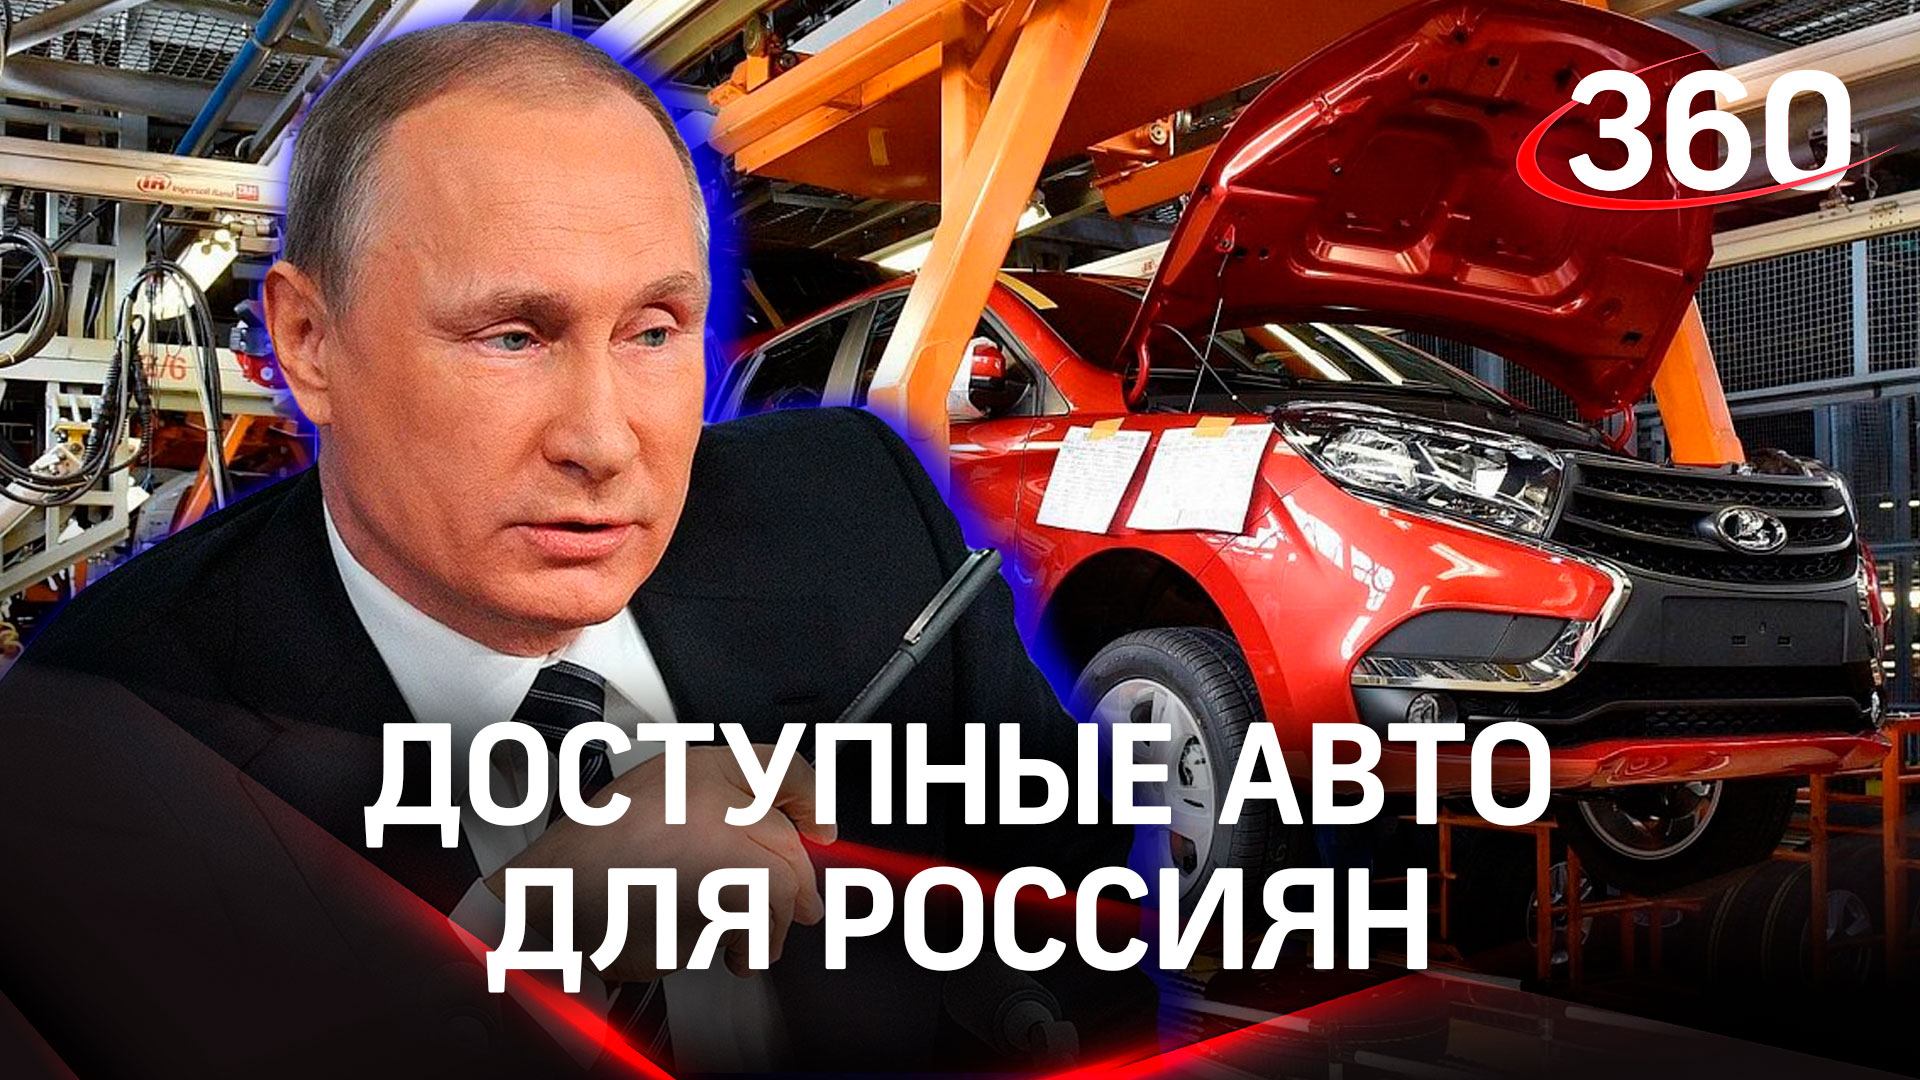 Доступные авто для россиян и развитие отрасли - Путин назвал задачи российского автопрома